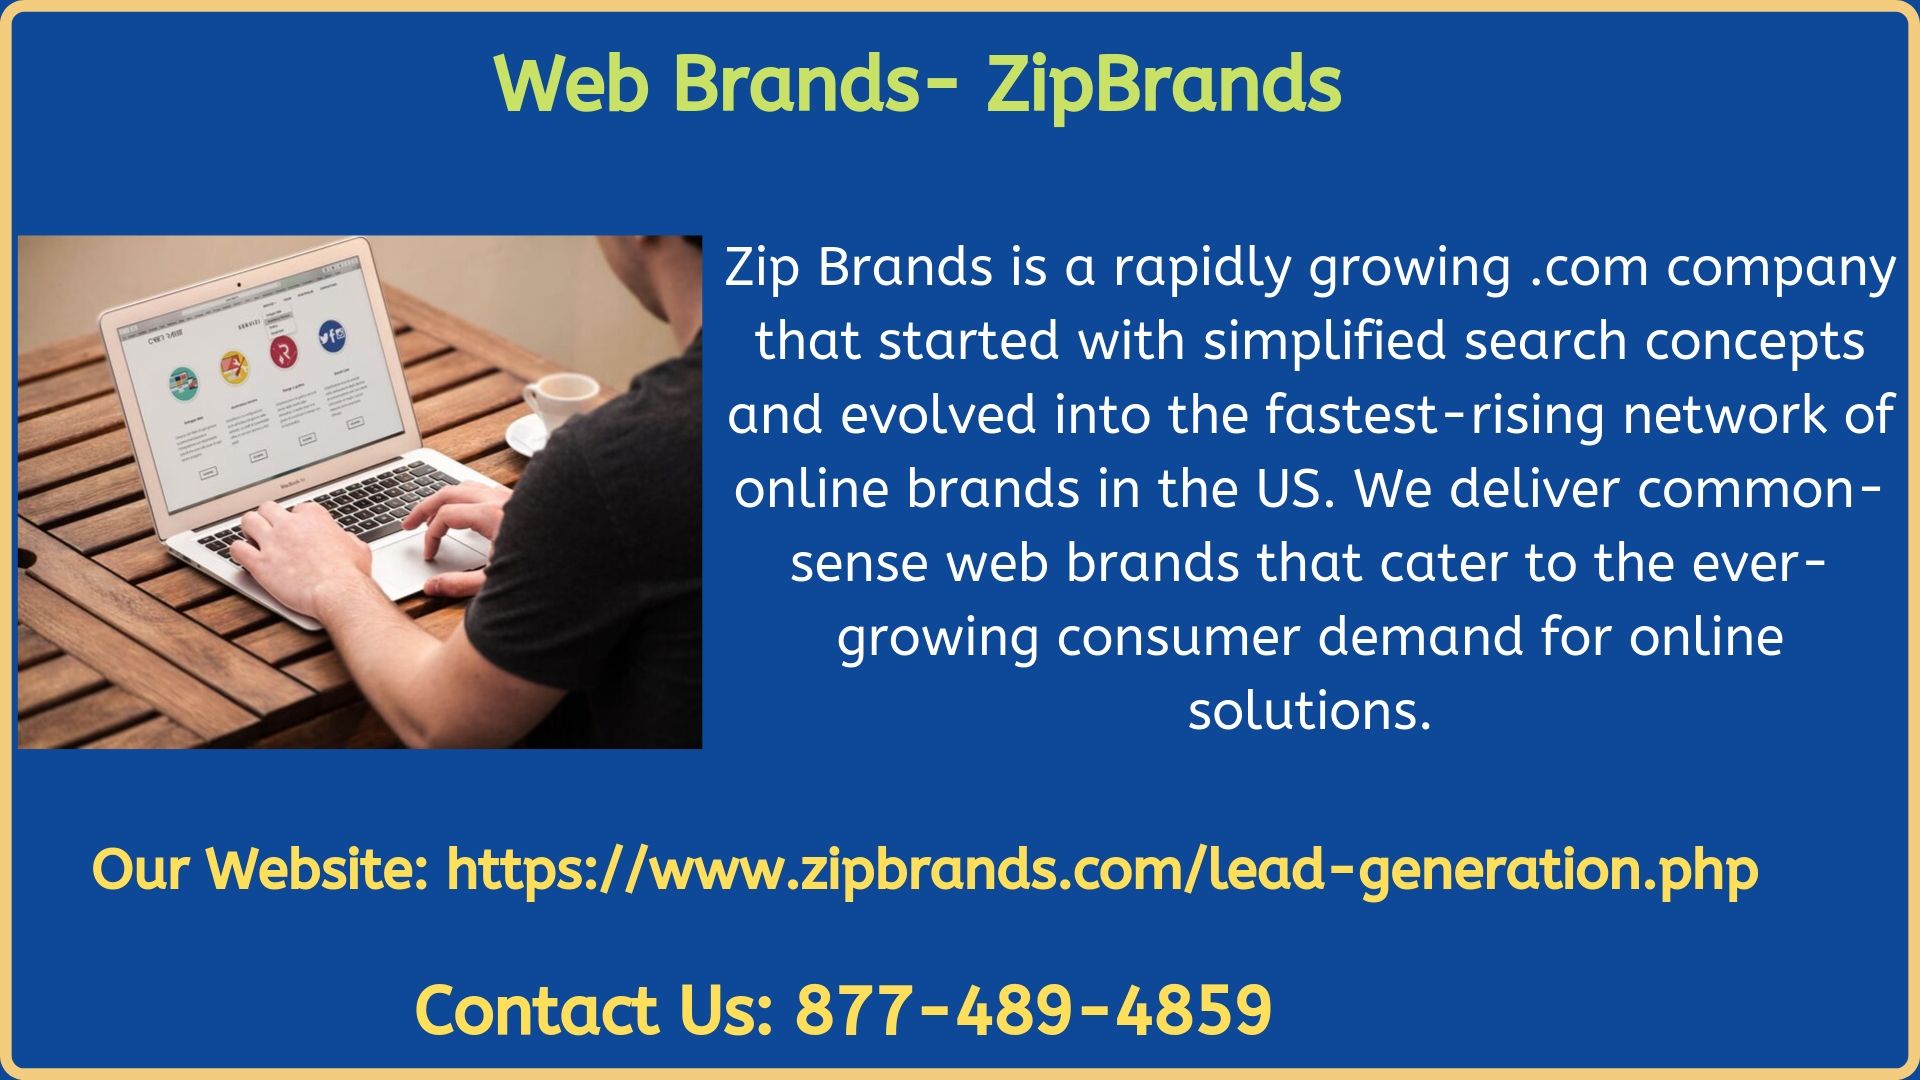 Web Brands- ZipBrands.jpg  by zipbrandsusa